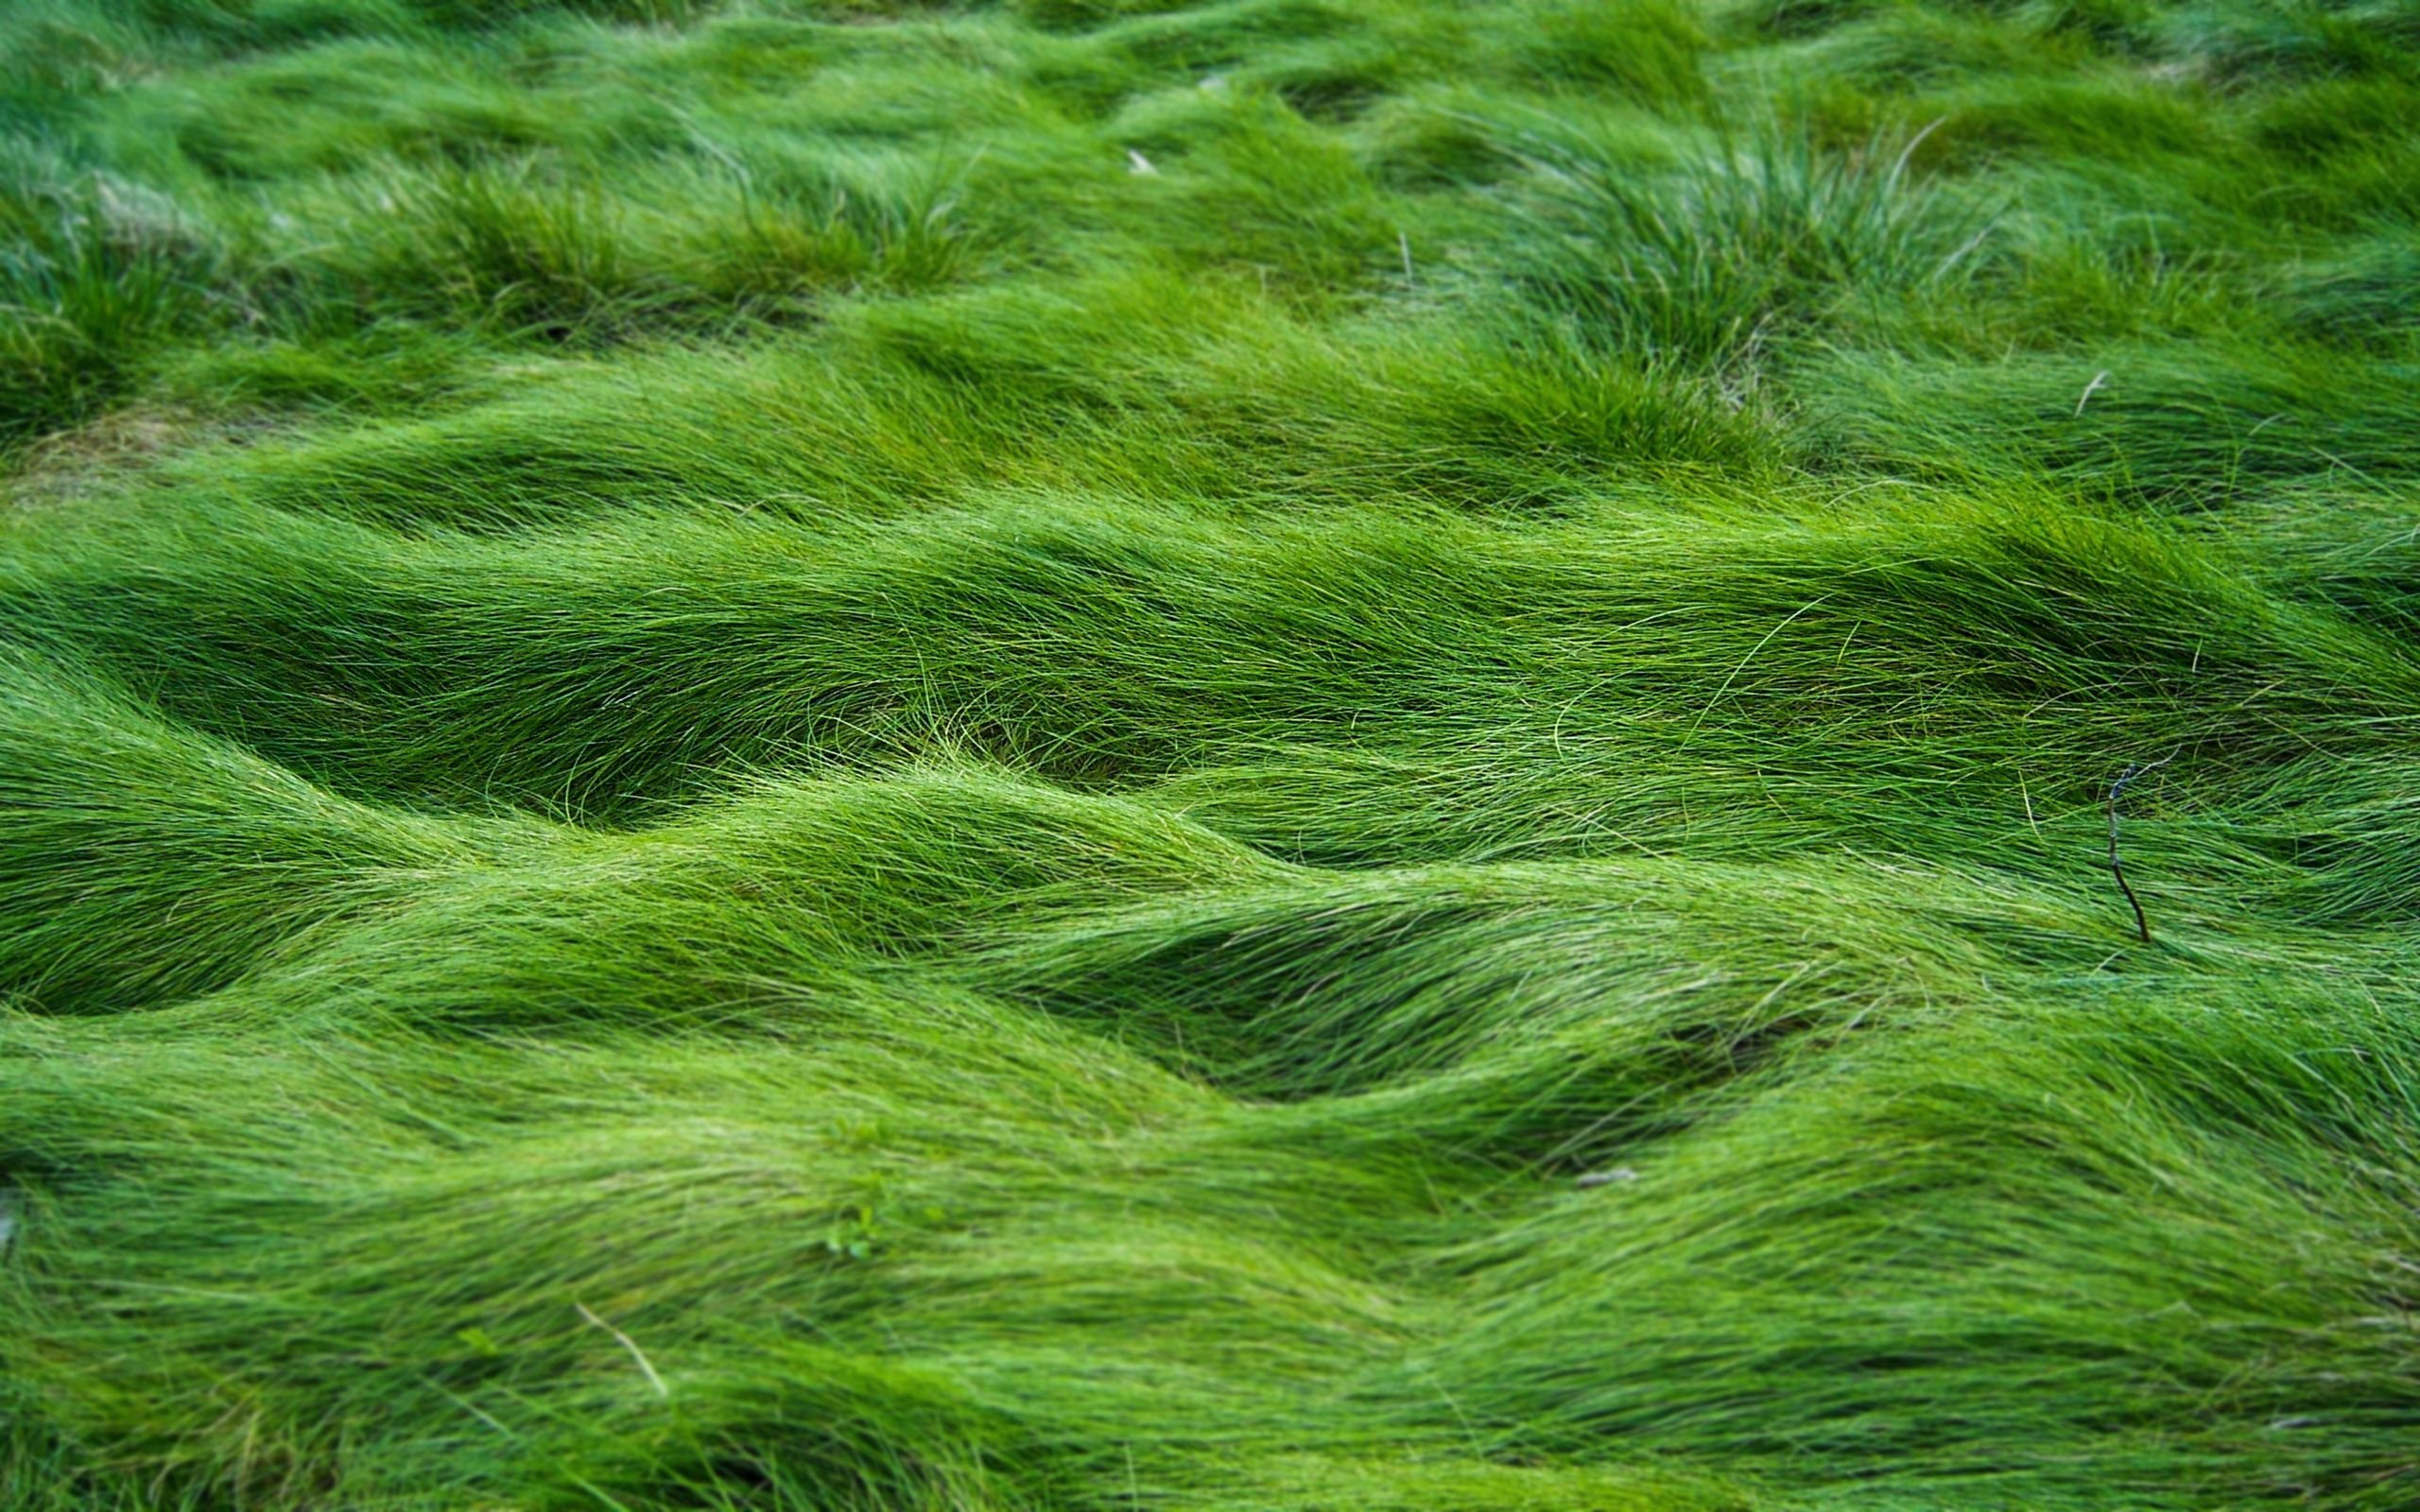 Цвет Грасс Грин. Grass Green ягель. Зеленые водоросли ульфоциевые. Зеленая трава. Un natural